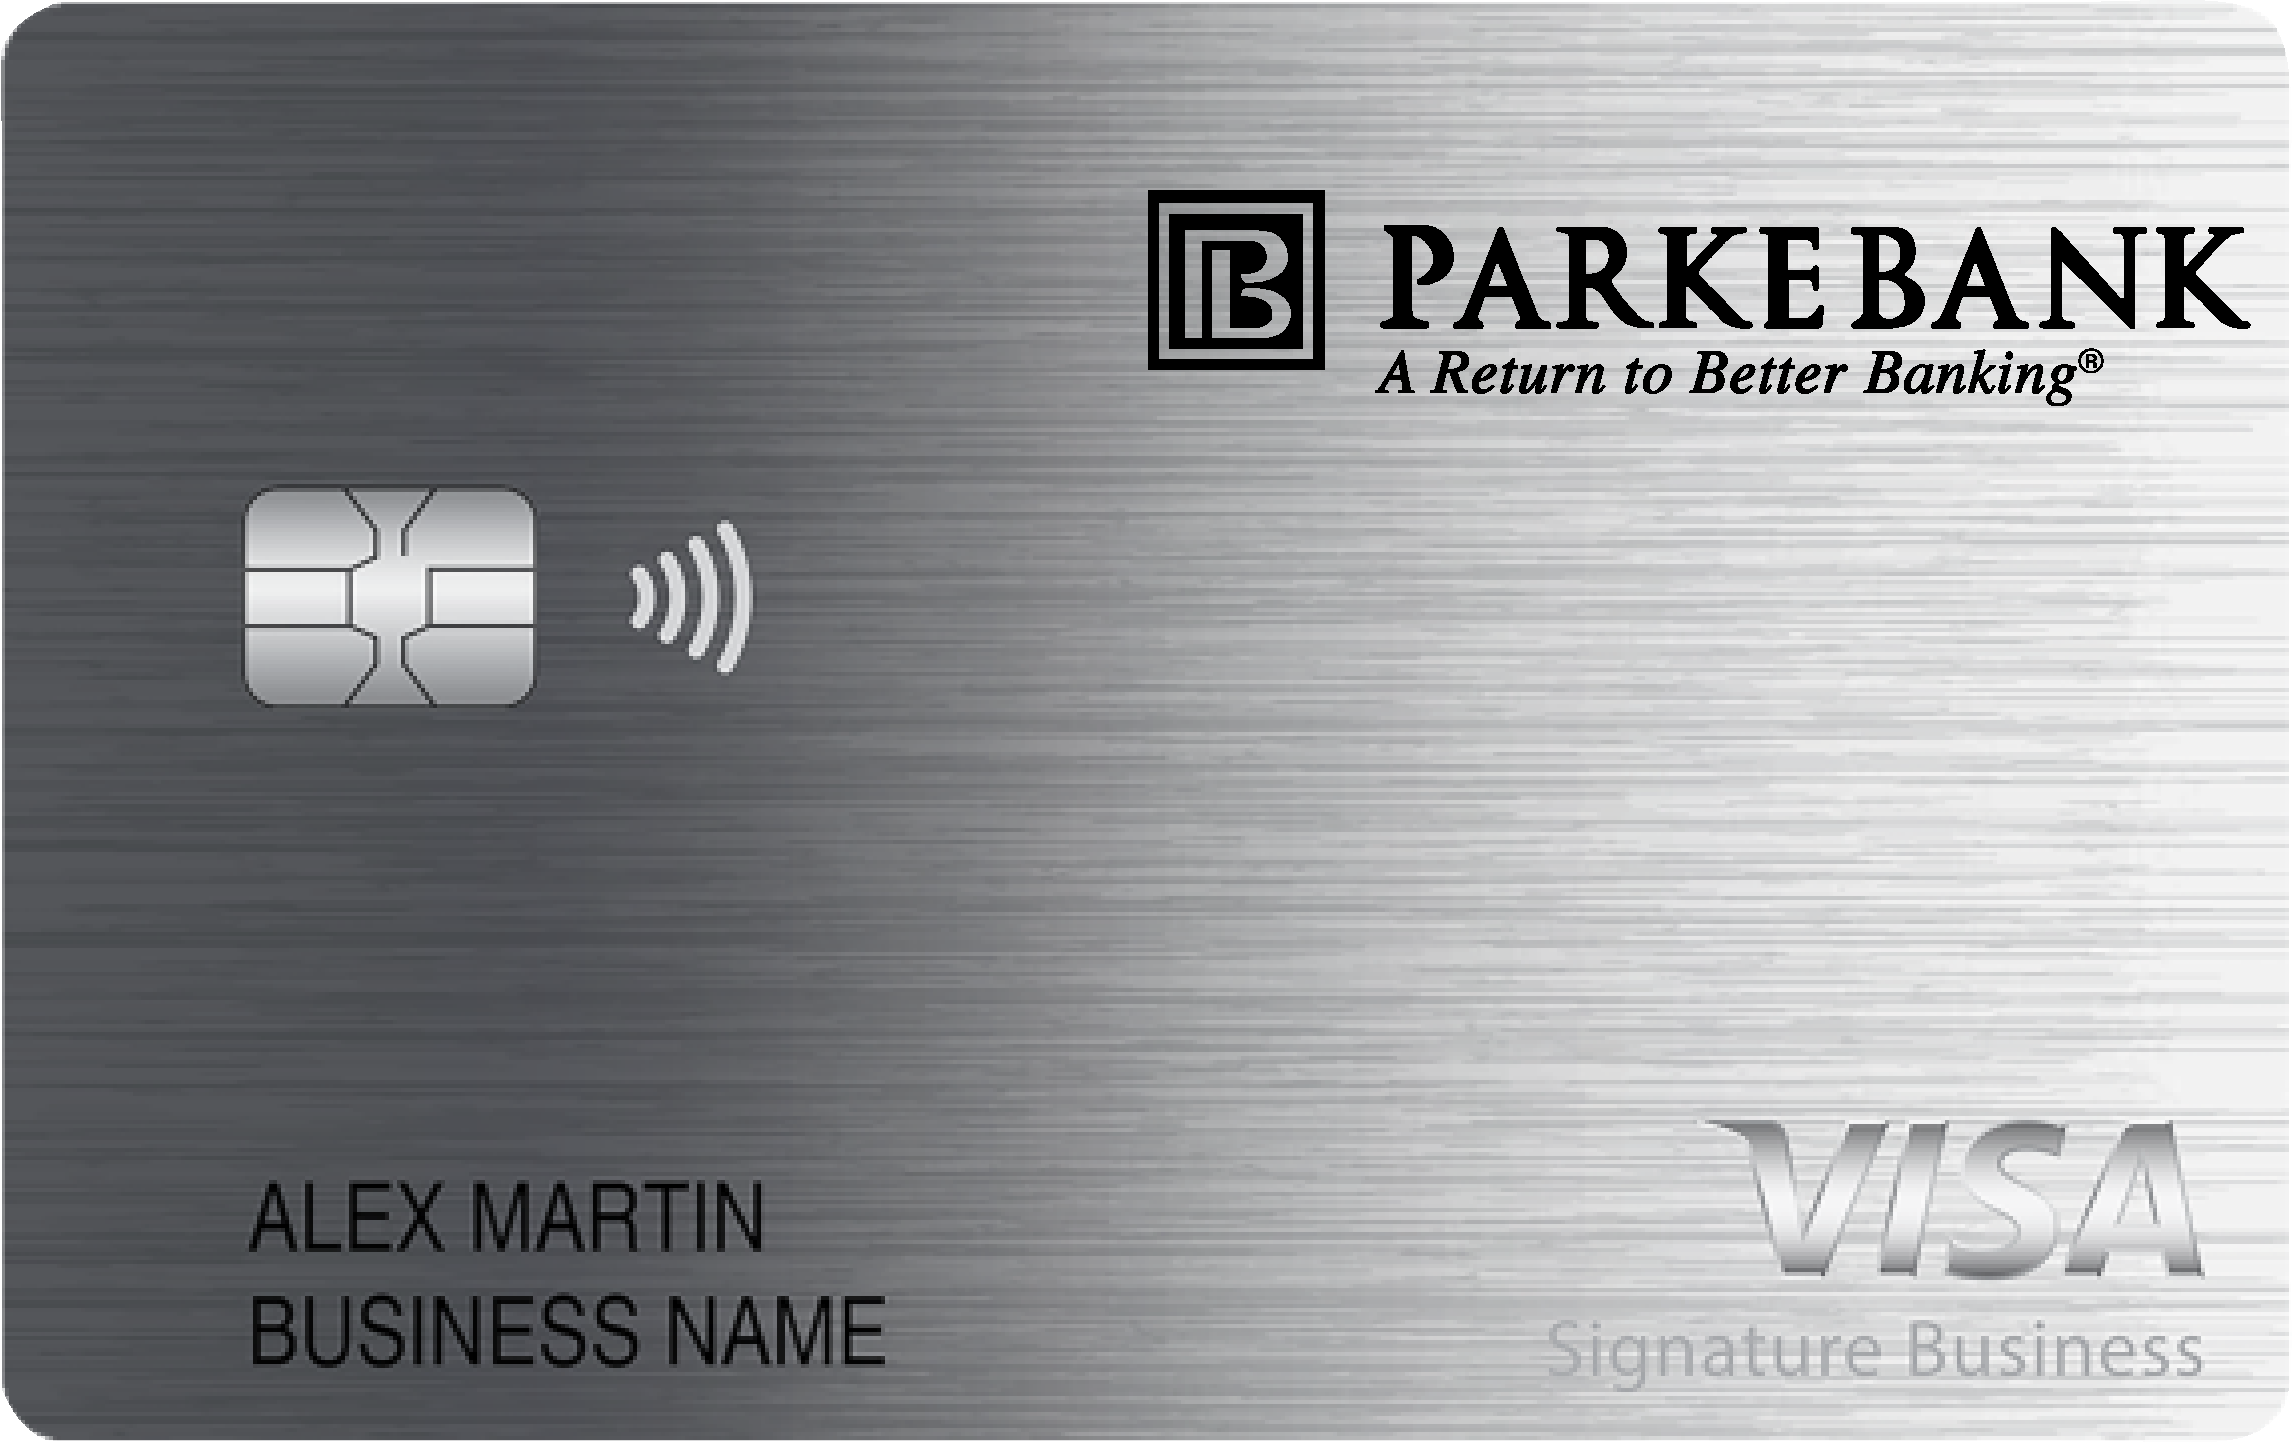 Parke Bank Smart Business Rewards Card